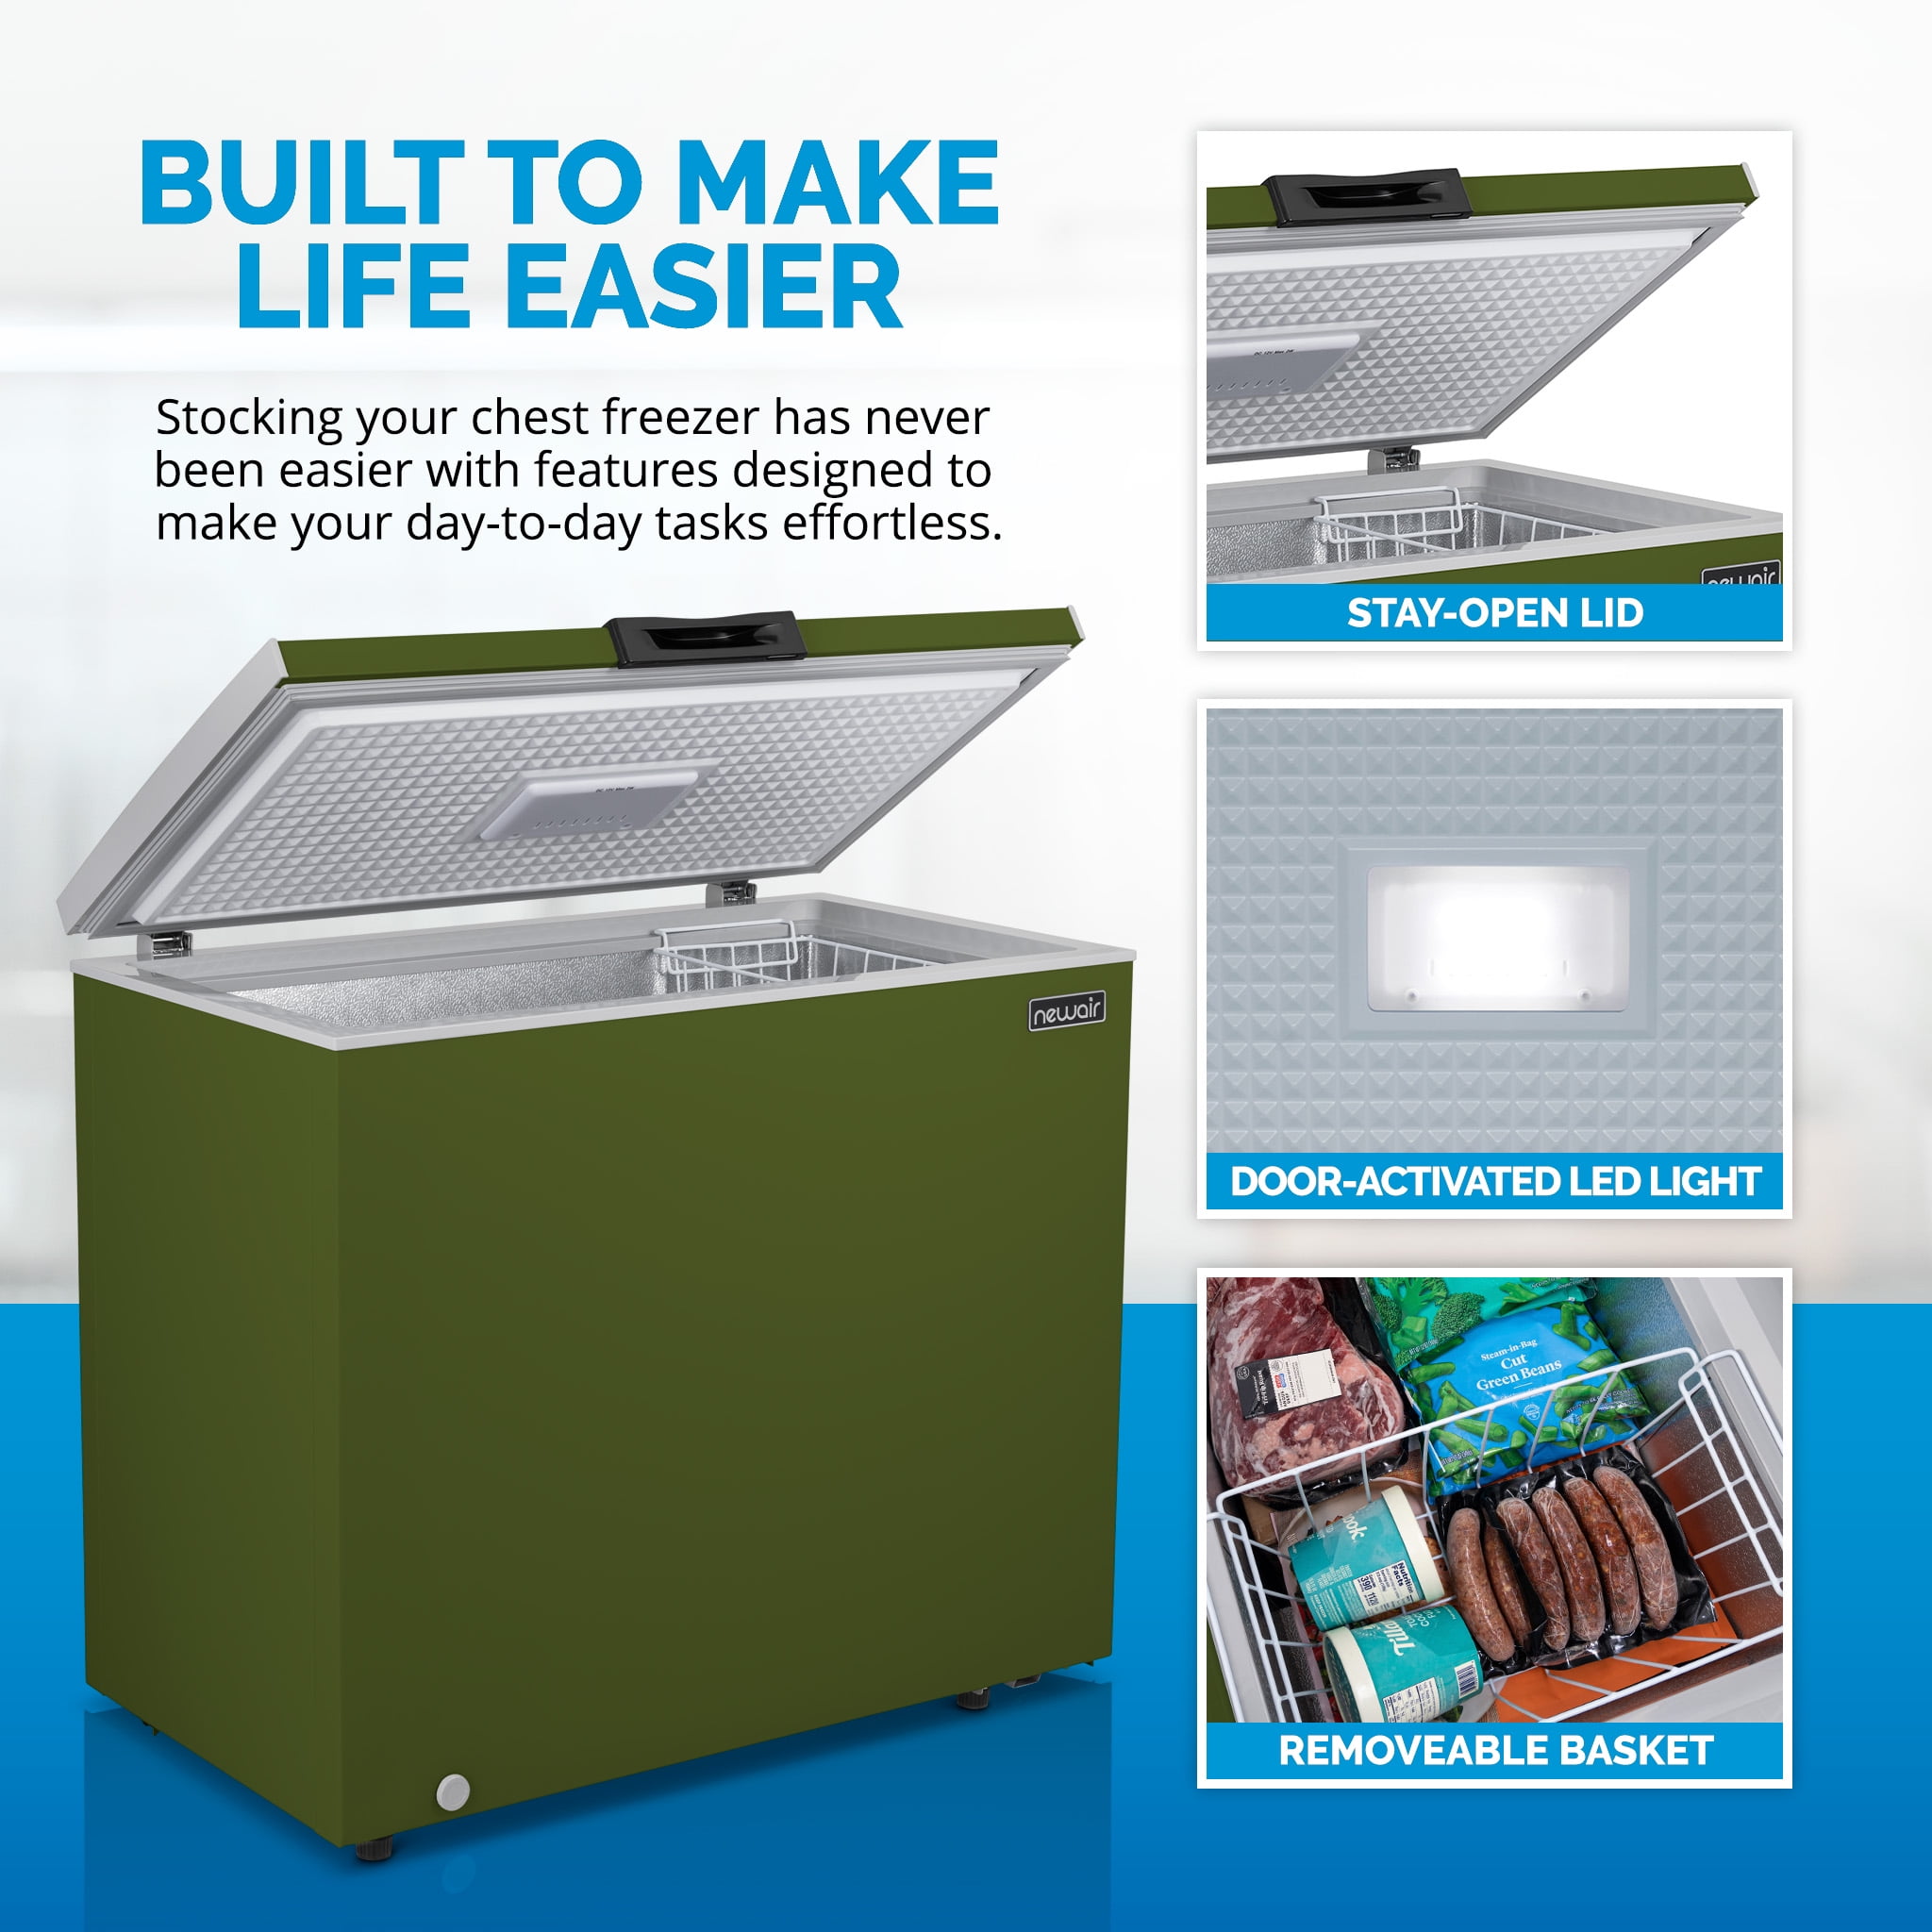 Refrigerador Pequeño GRS 3.5 pies con Escarcha color Gris – GRS  Electrodomésticos GT502